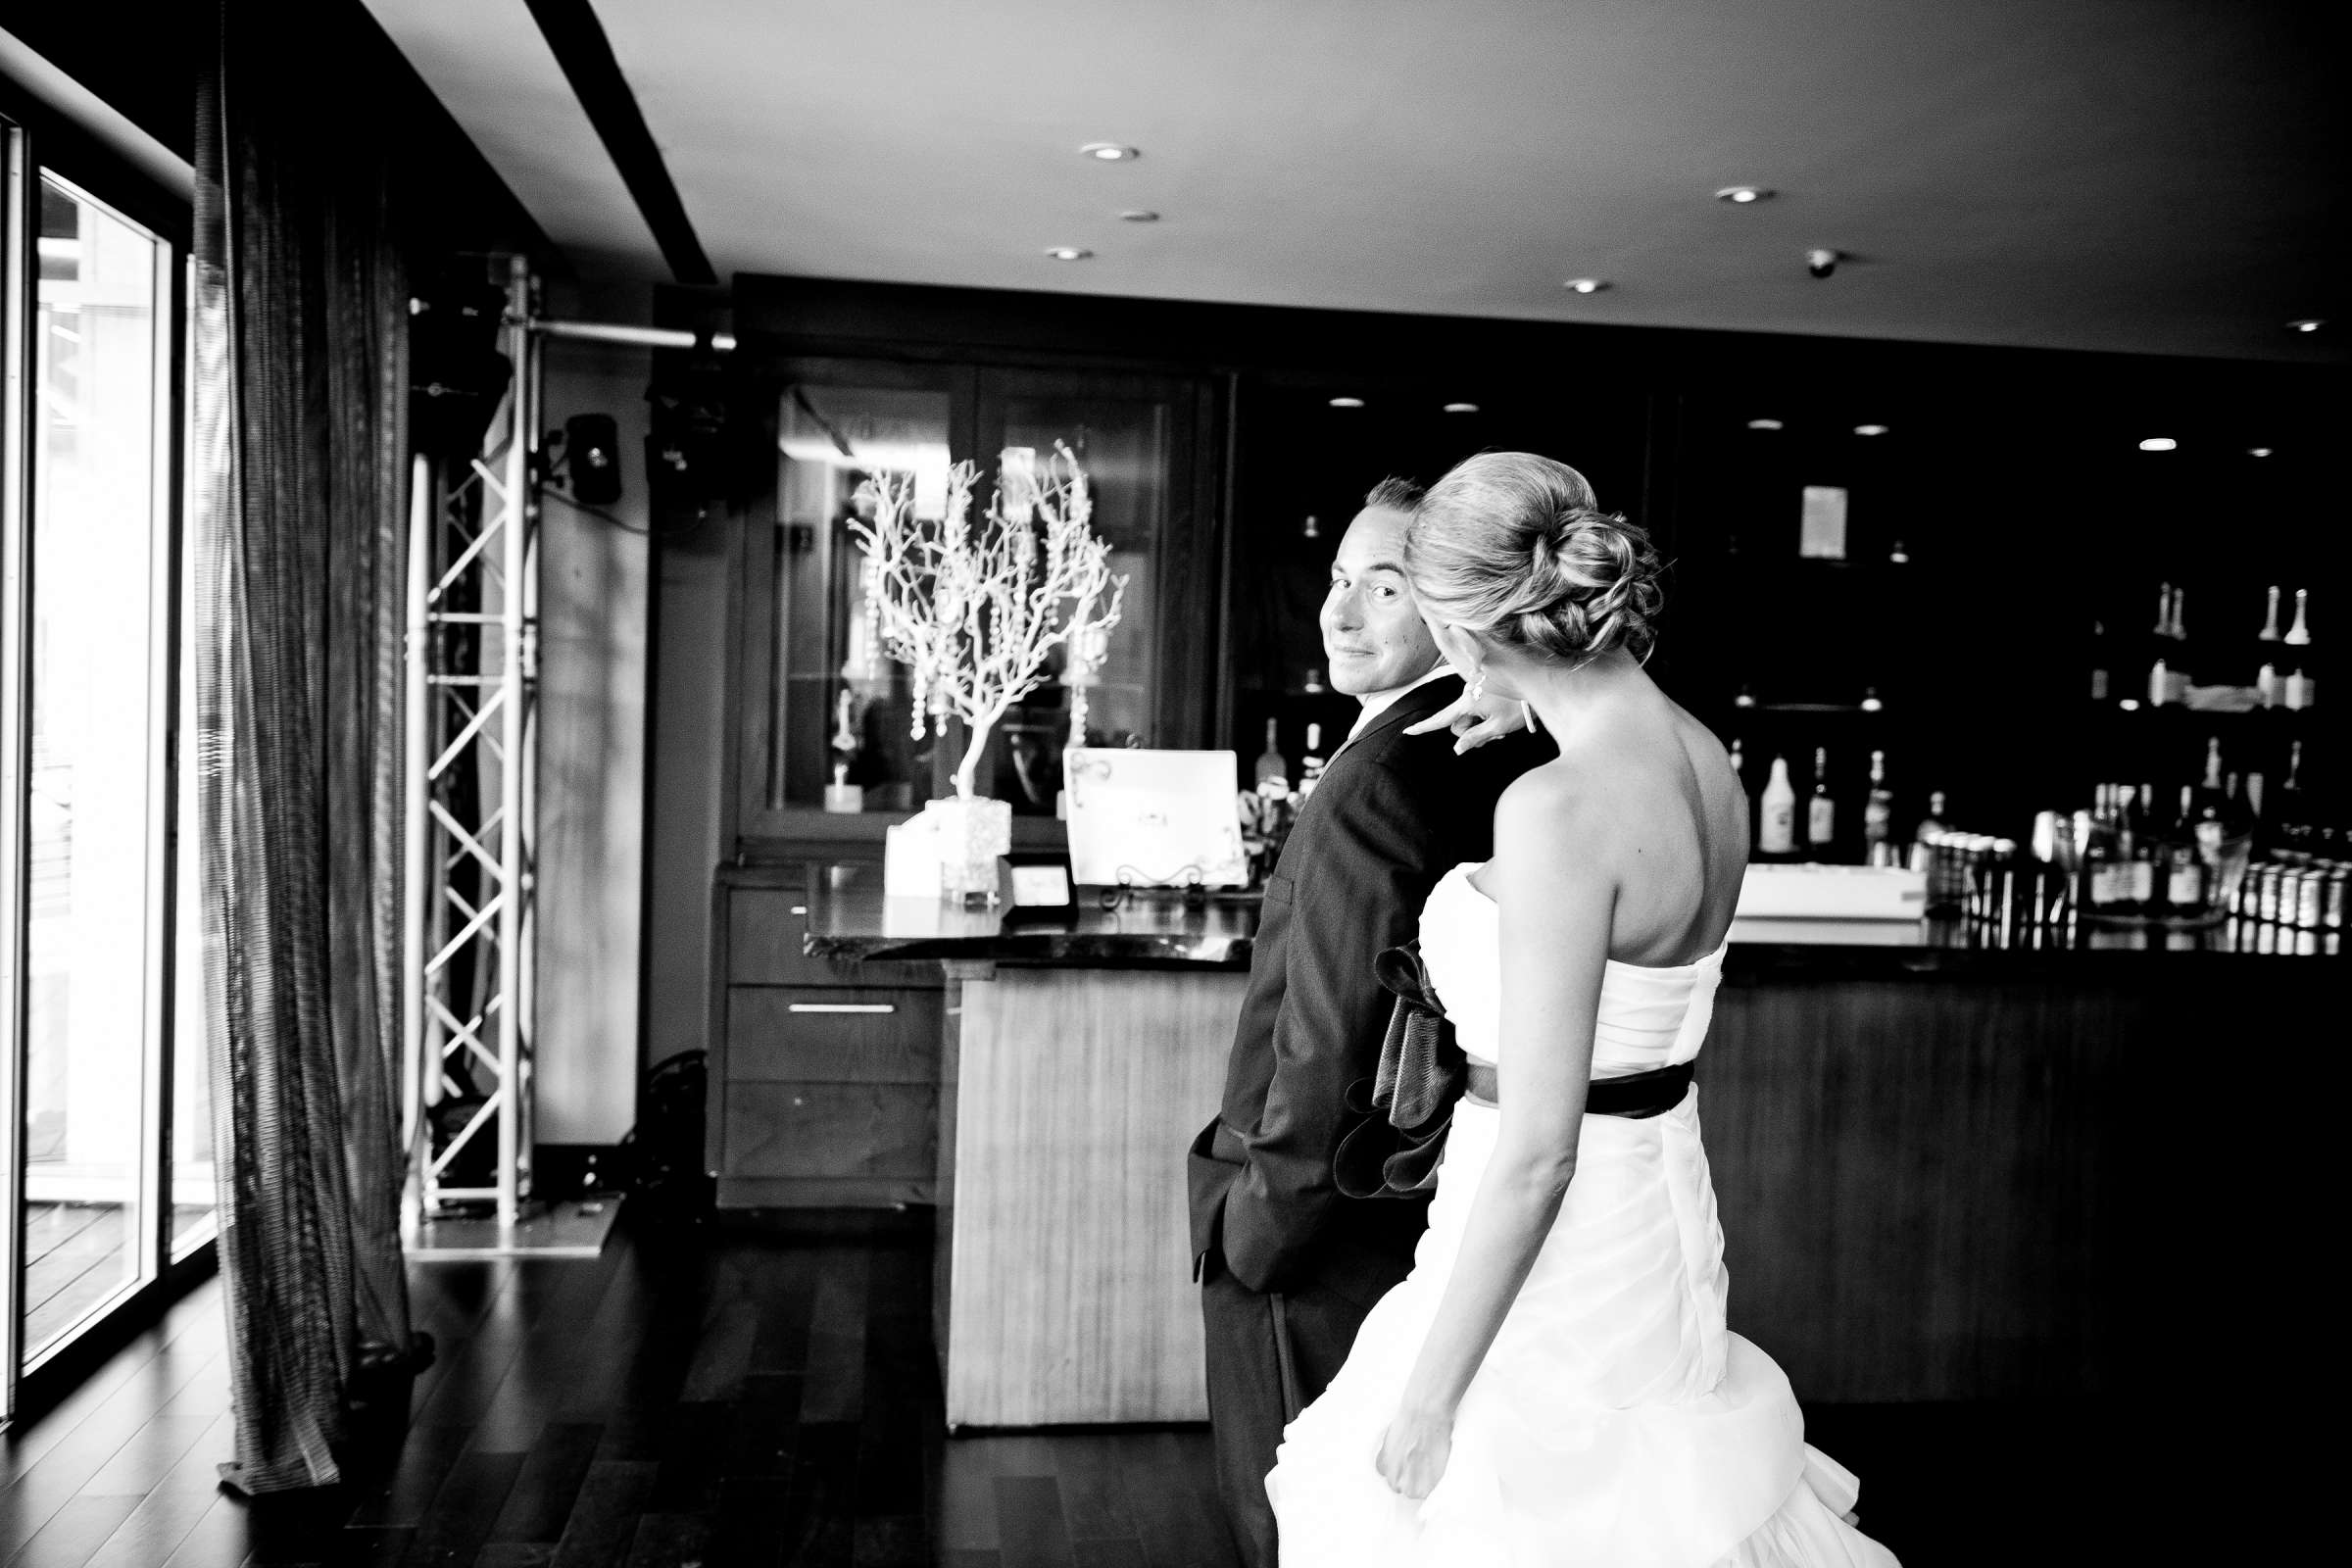 Hotel Palomar San Diego Wedding, Liz and Jeff Wedding Photo #205373 by True Photography